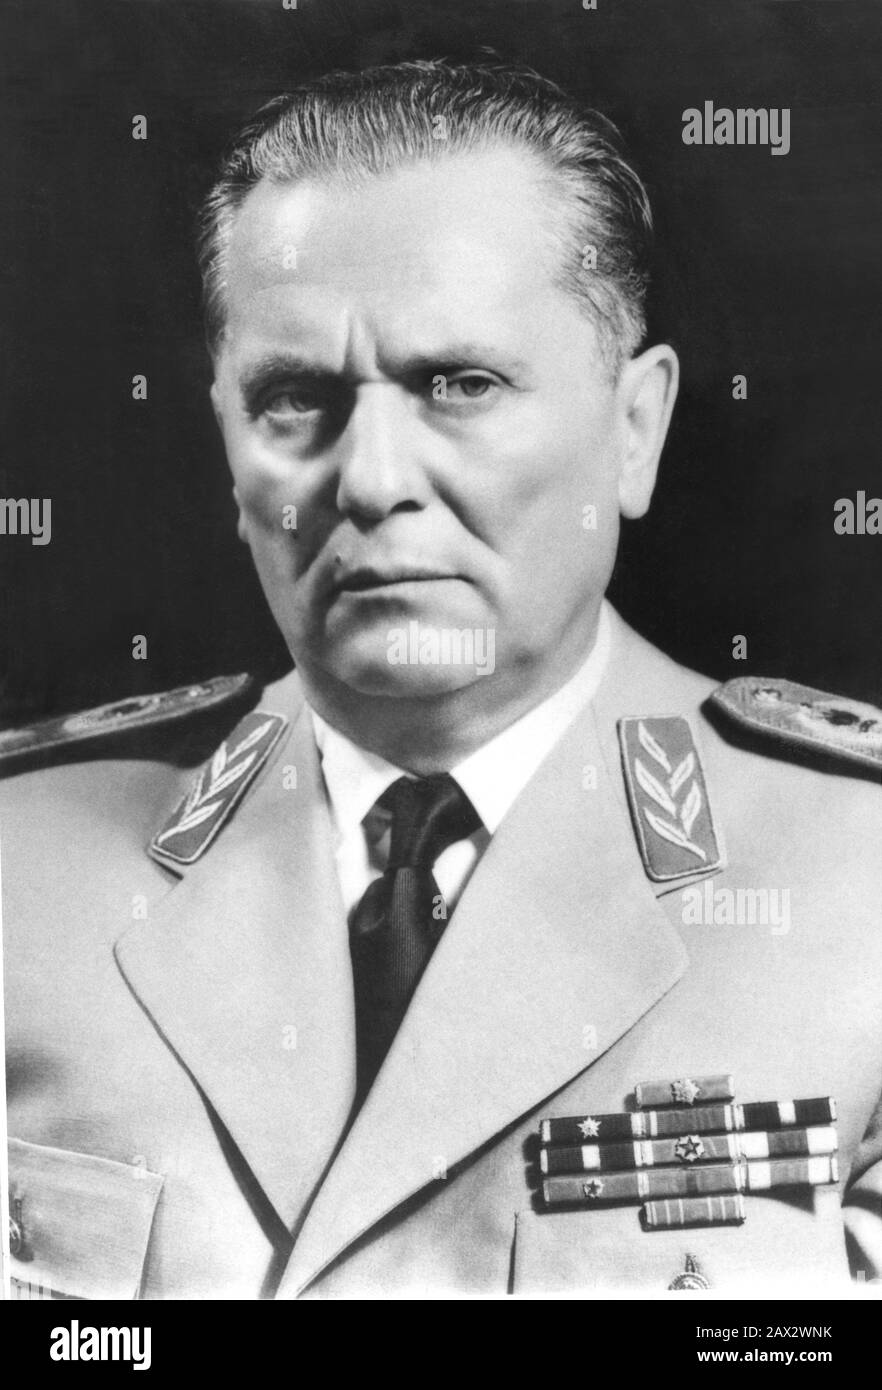 1968 , Belgrad , Yugoslavia  :  JOSIP BROZ TITO ( 1892 - 1990 ) , the leader of the Socialist Federal Republic of Yugoslavia from 1945 until his death  - POLITICO - POLITICA - POLITIC - SOCIALIST - SOCIALISMO - SOCIALISM  - COMUNISTA - COMUNISMO - COMMUNIST - COMMUNISM - DITTATURA - DICTATOR - DITTATORE - foto storiche - foto storica - portrait - ritratto - cravatta - tie  - colletto - collar  - Repubblica Jugoslava -  JUGOSLAVIA  - military uniform - divisa militare   ----  Archivio GBB Stock Photo